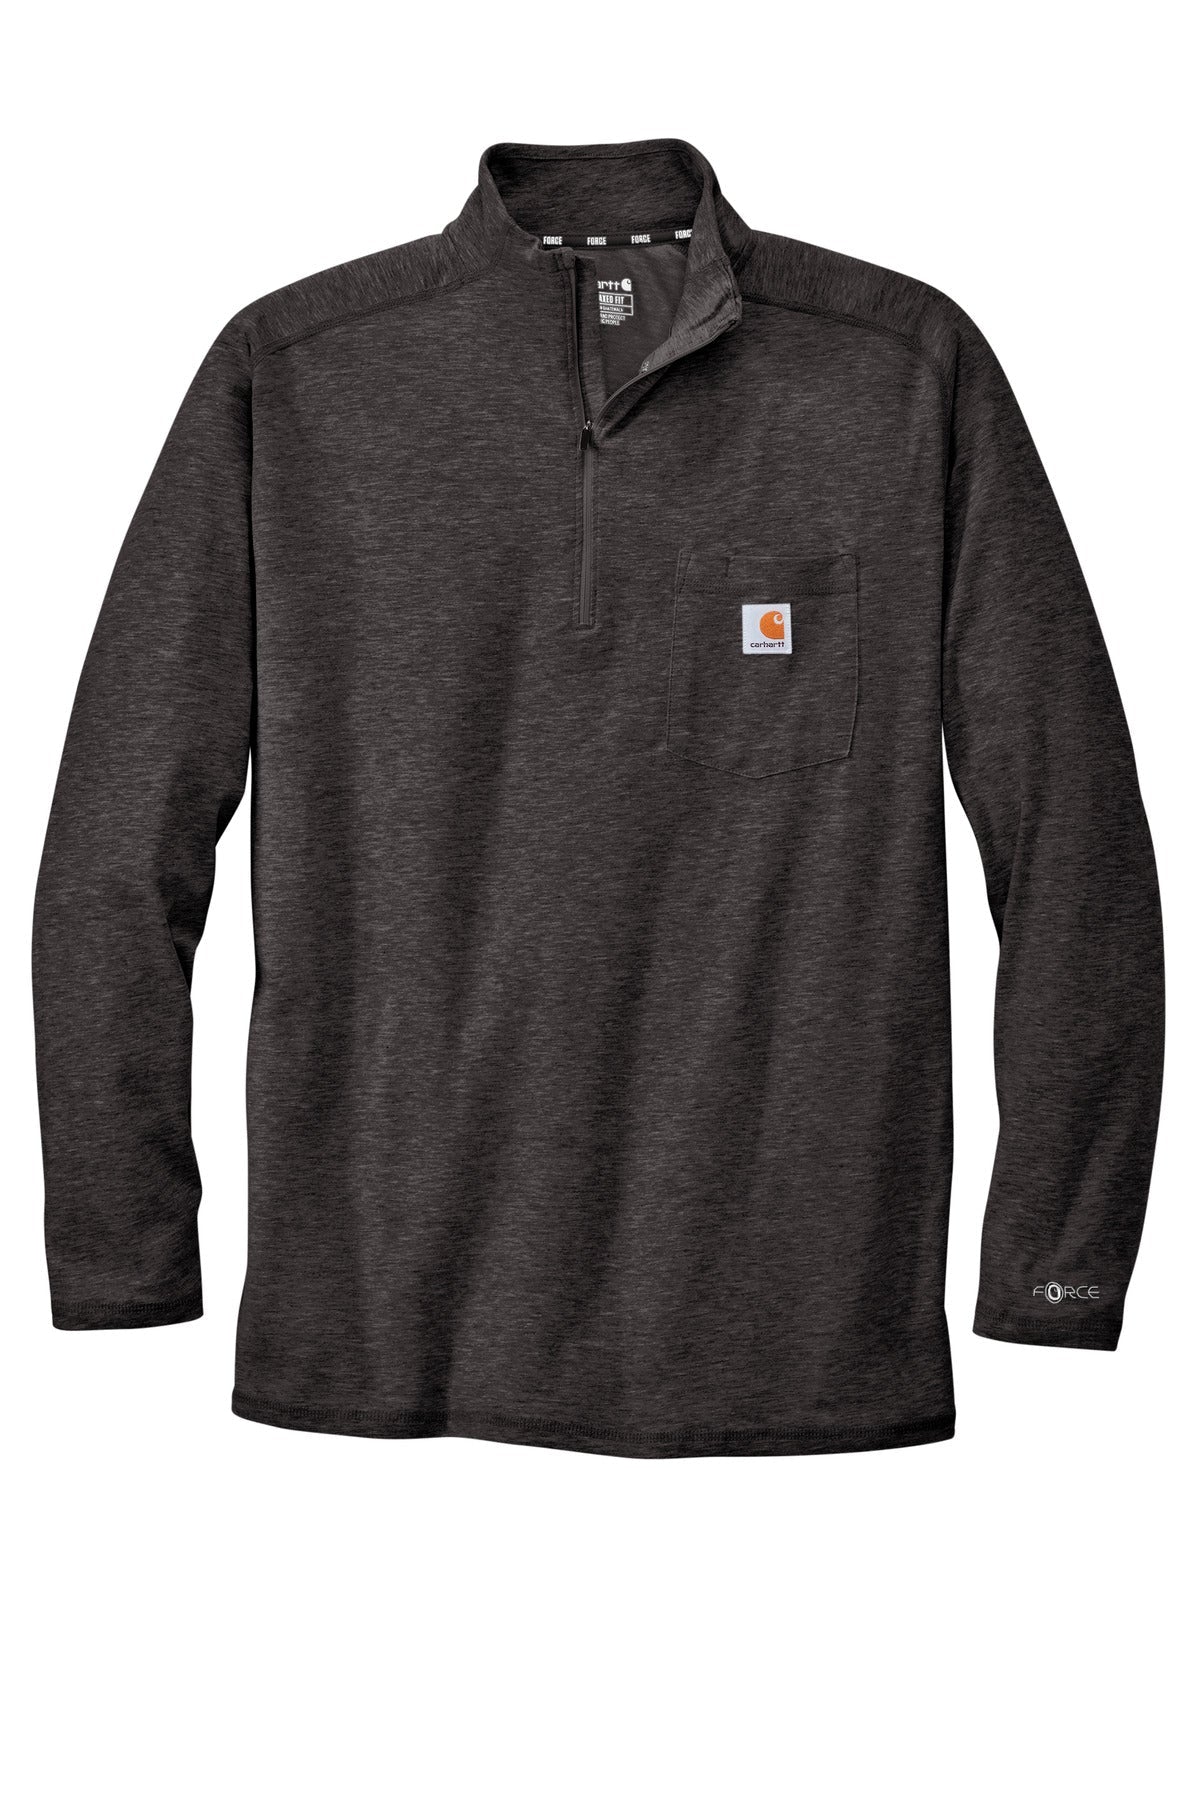 Carhartt Force 1/4-Zip Long Sleeve T-Shirt CT104255 - BT Imprintables Shirts